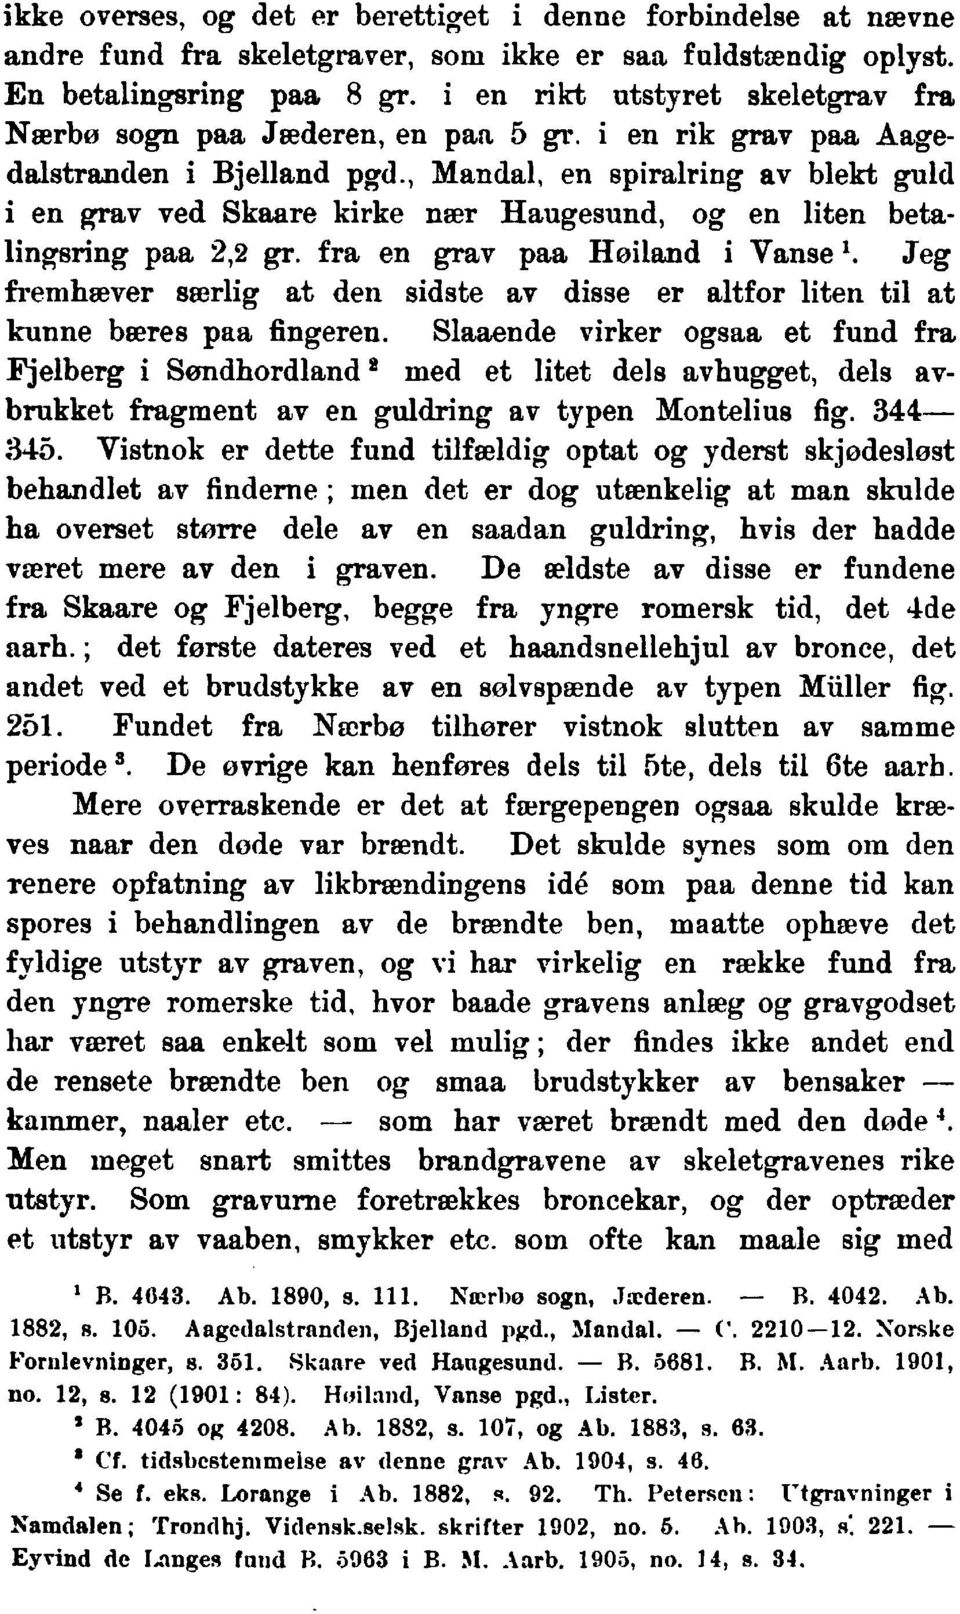 ,Mandal, en spiralringav blekt guid i en grav ved Skaare kirke nr Haugesund, og en liten betalingsring paa 2,2 gr.